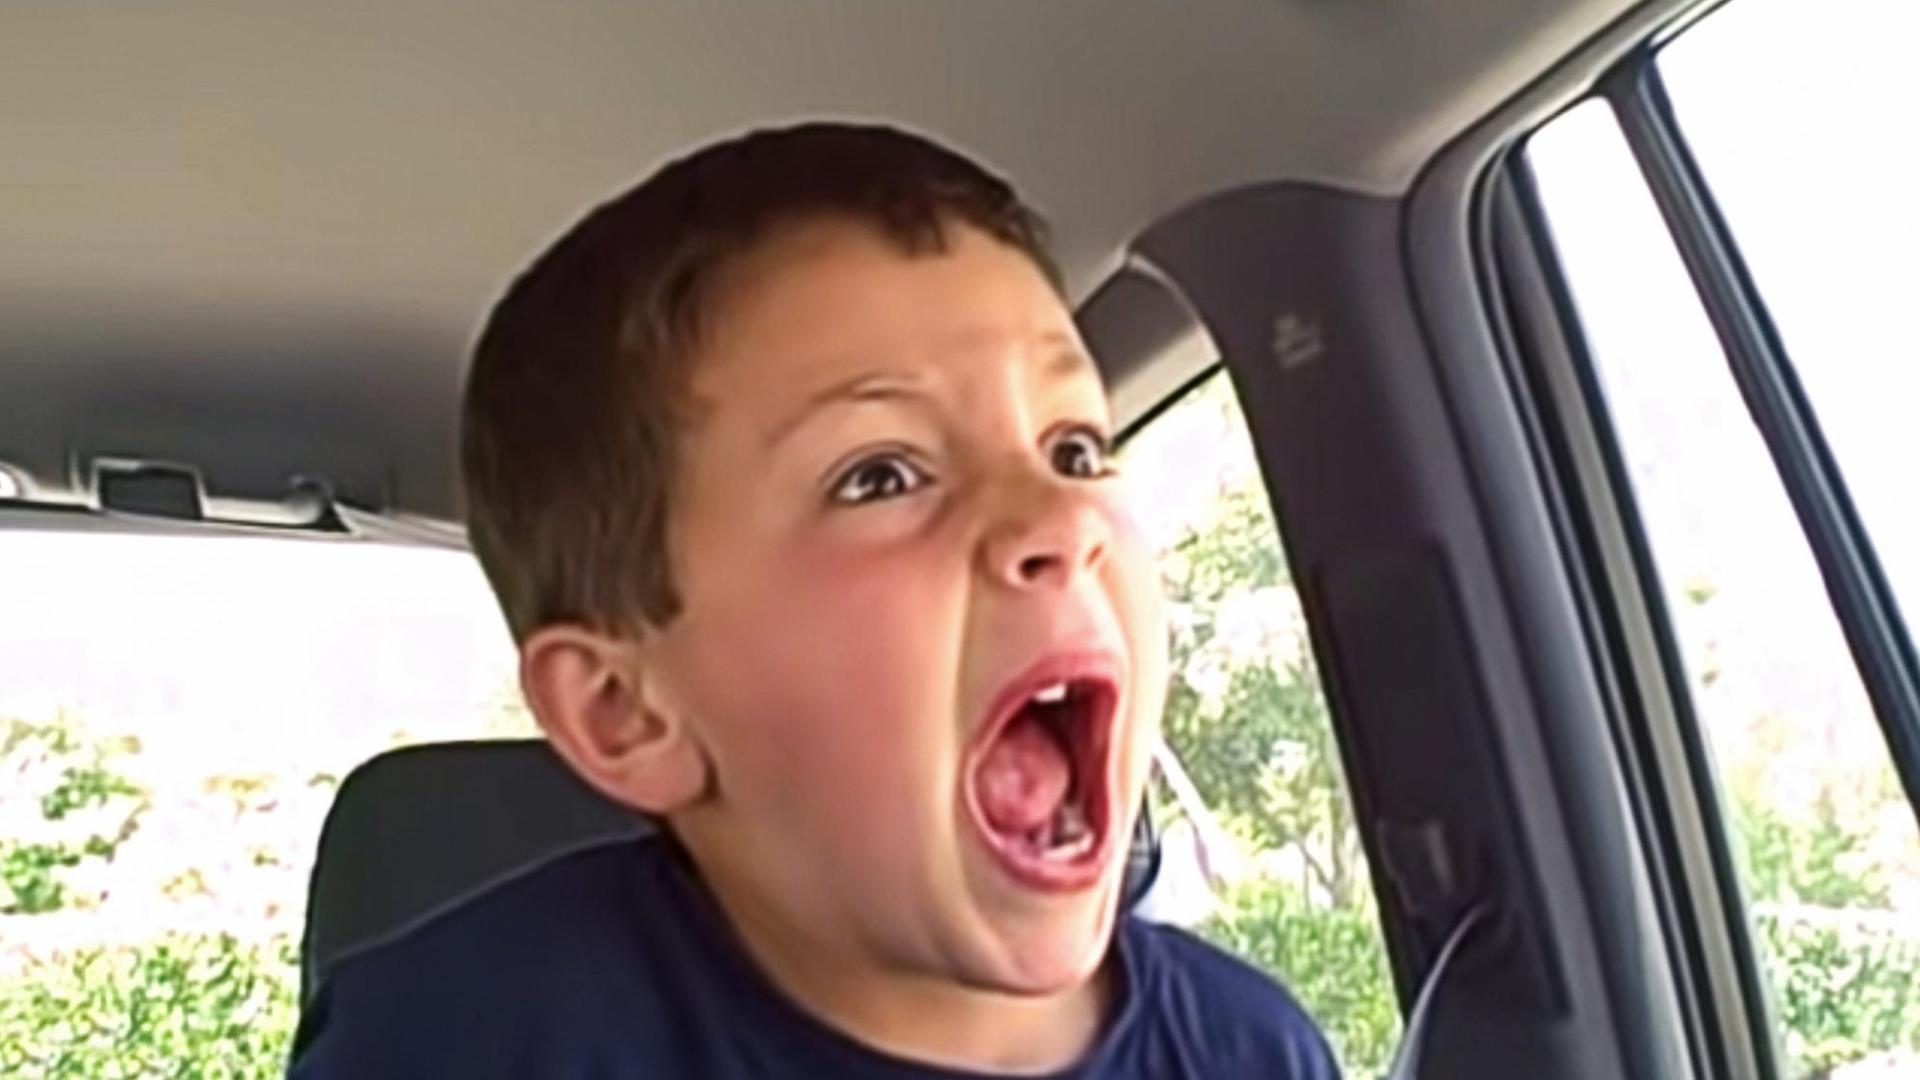 Szene aus »David after Dentist«. Das Bild zeigt einen Jungen mit einem weit aufgerissenen Mund auf der Rückbank eines Autos sitzend.